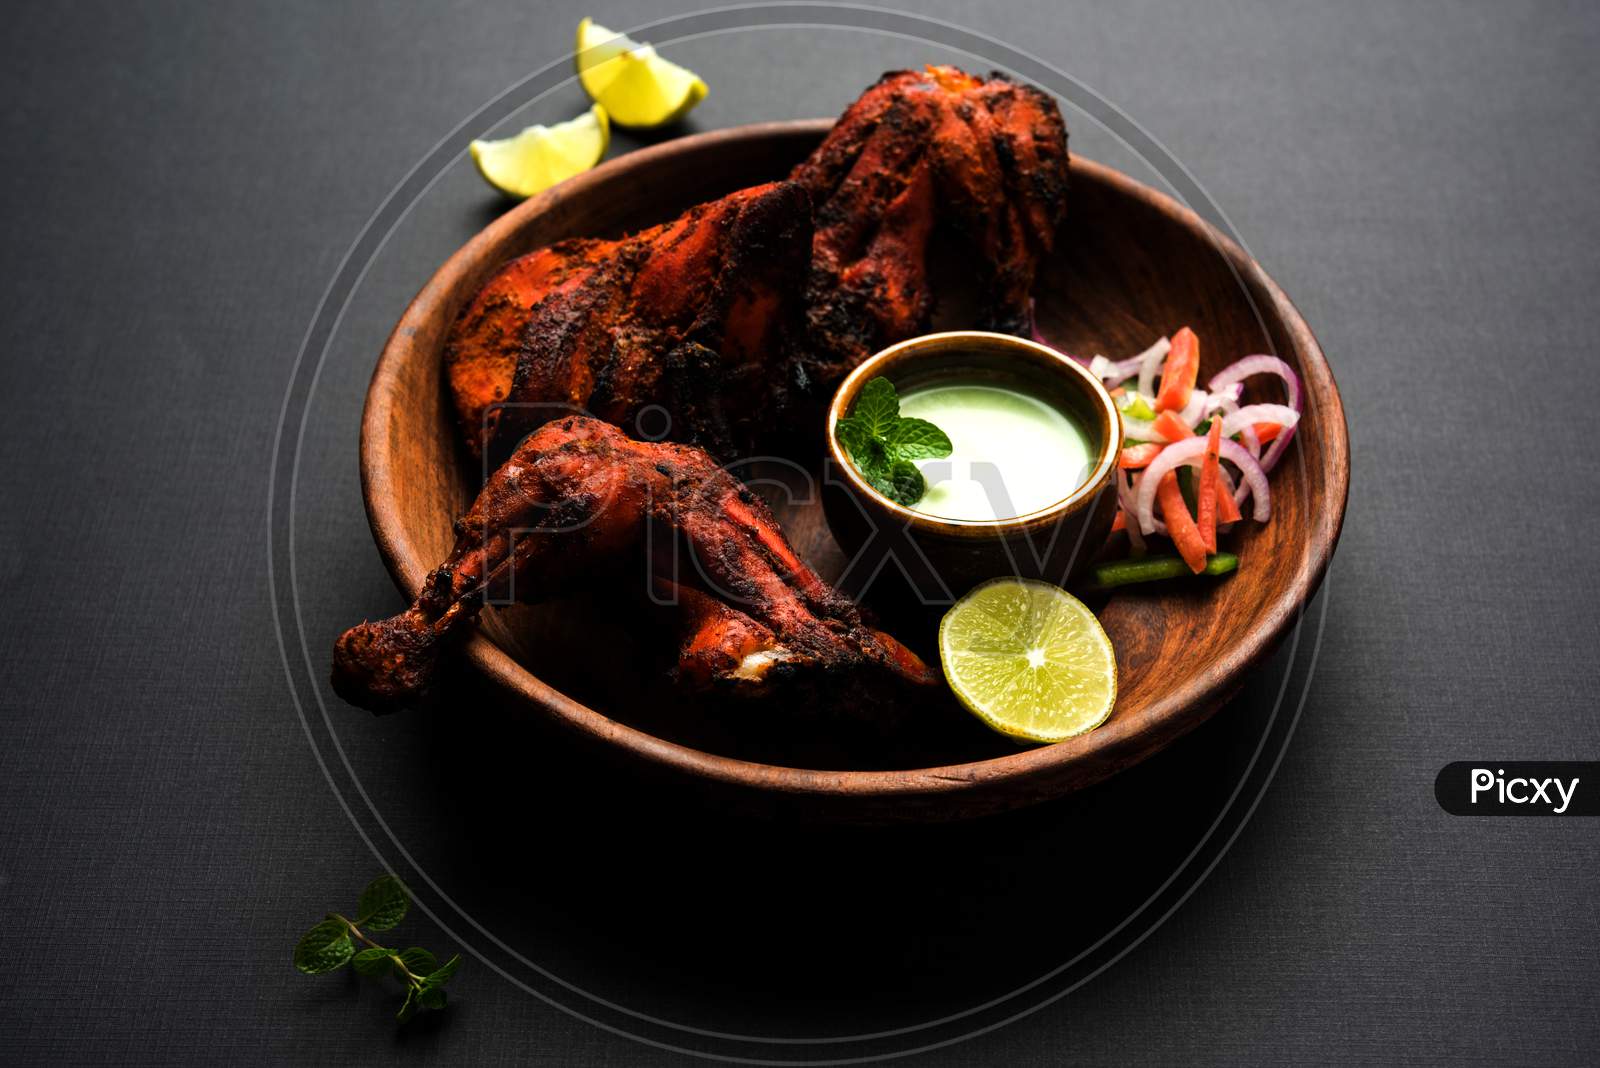 Tandoori chicken or barbecue grilled chicken legs